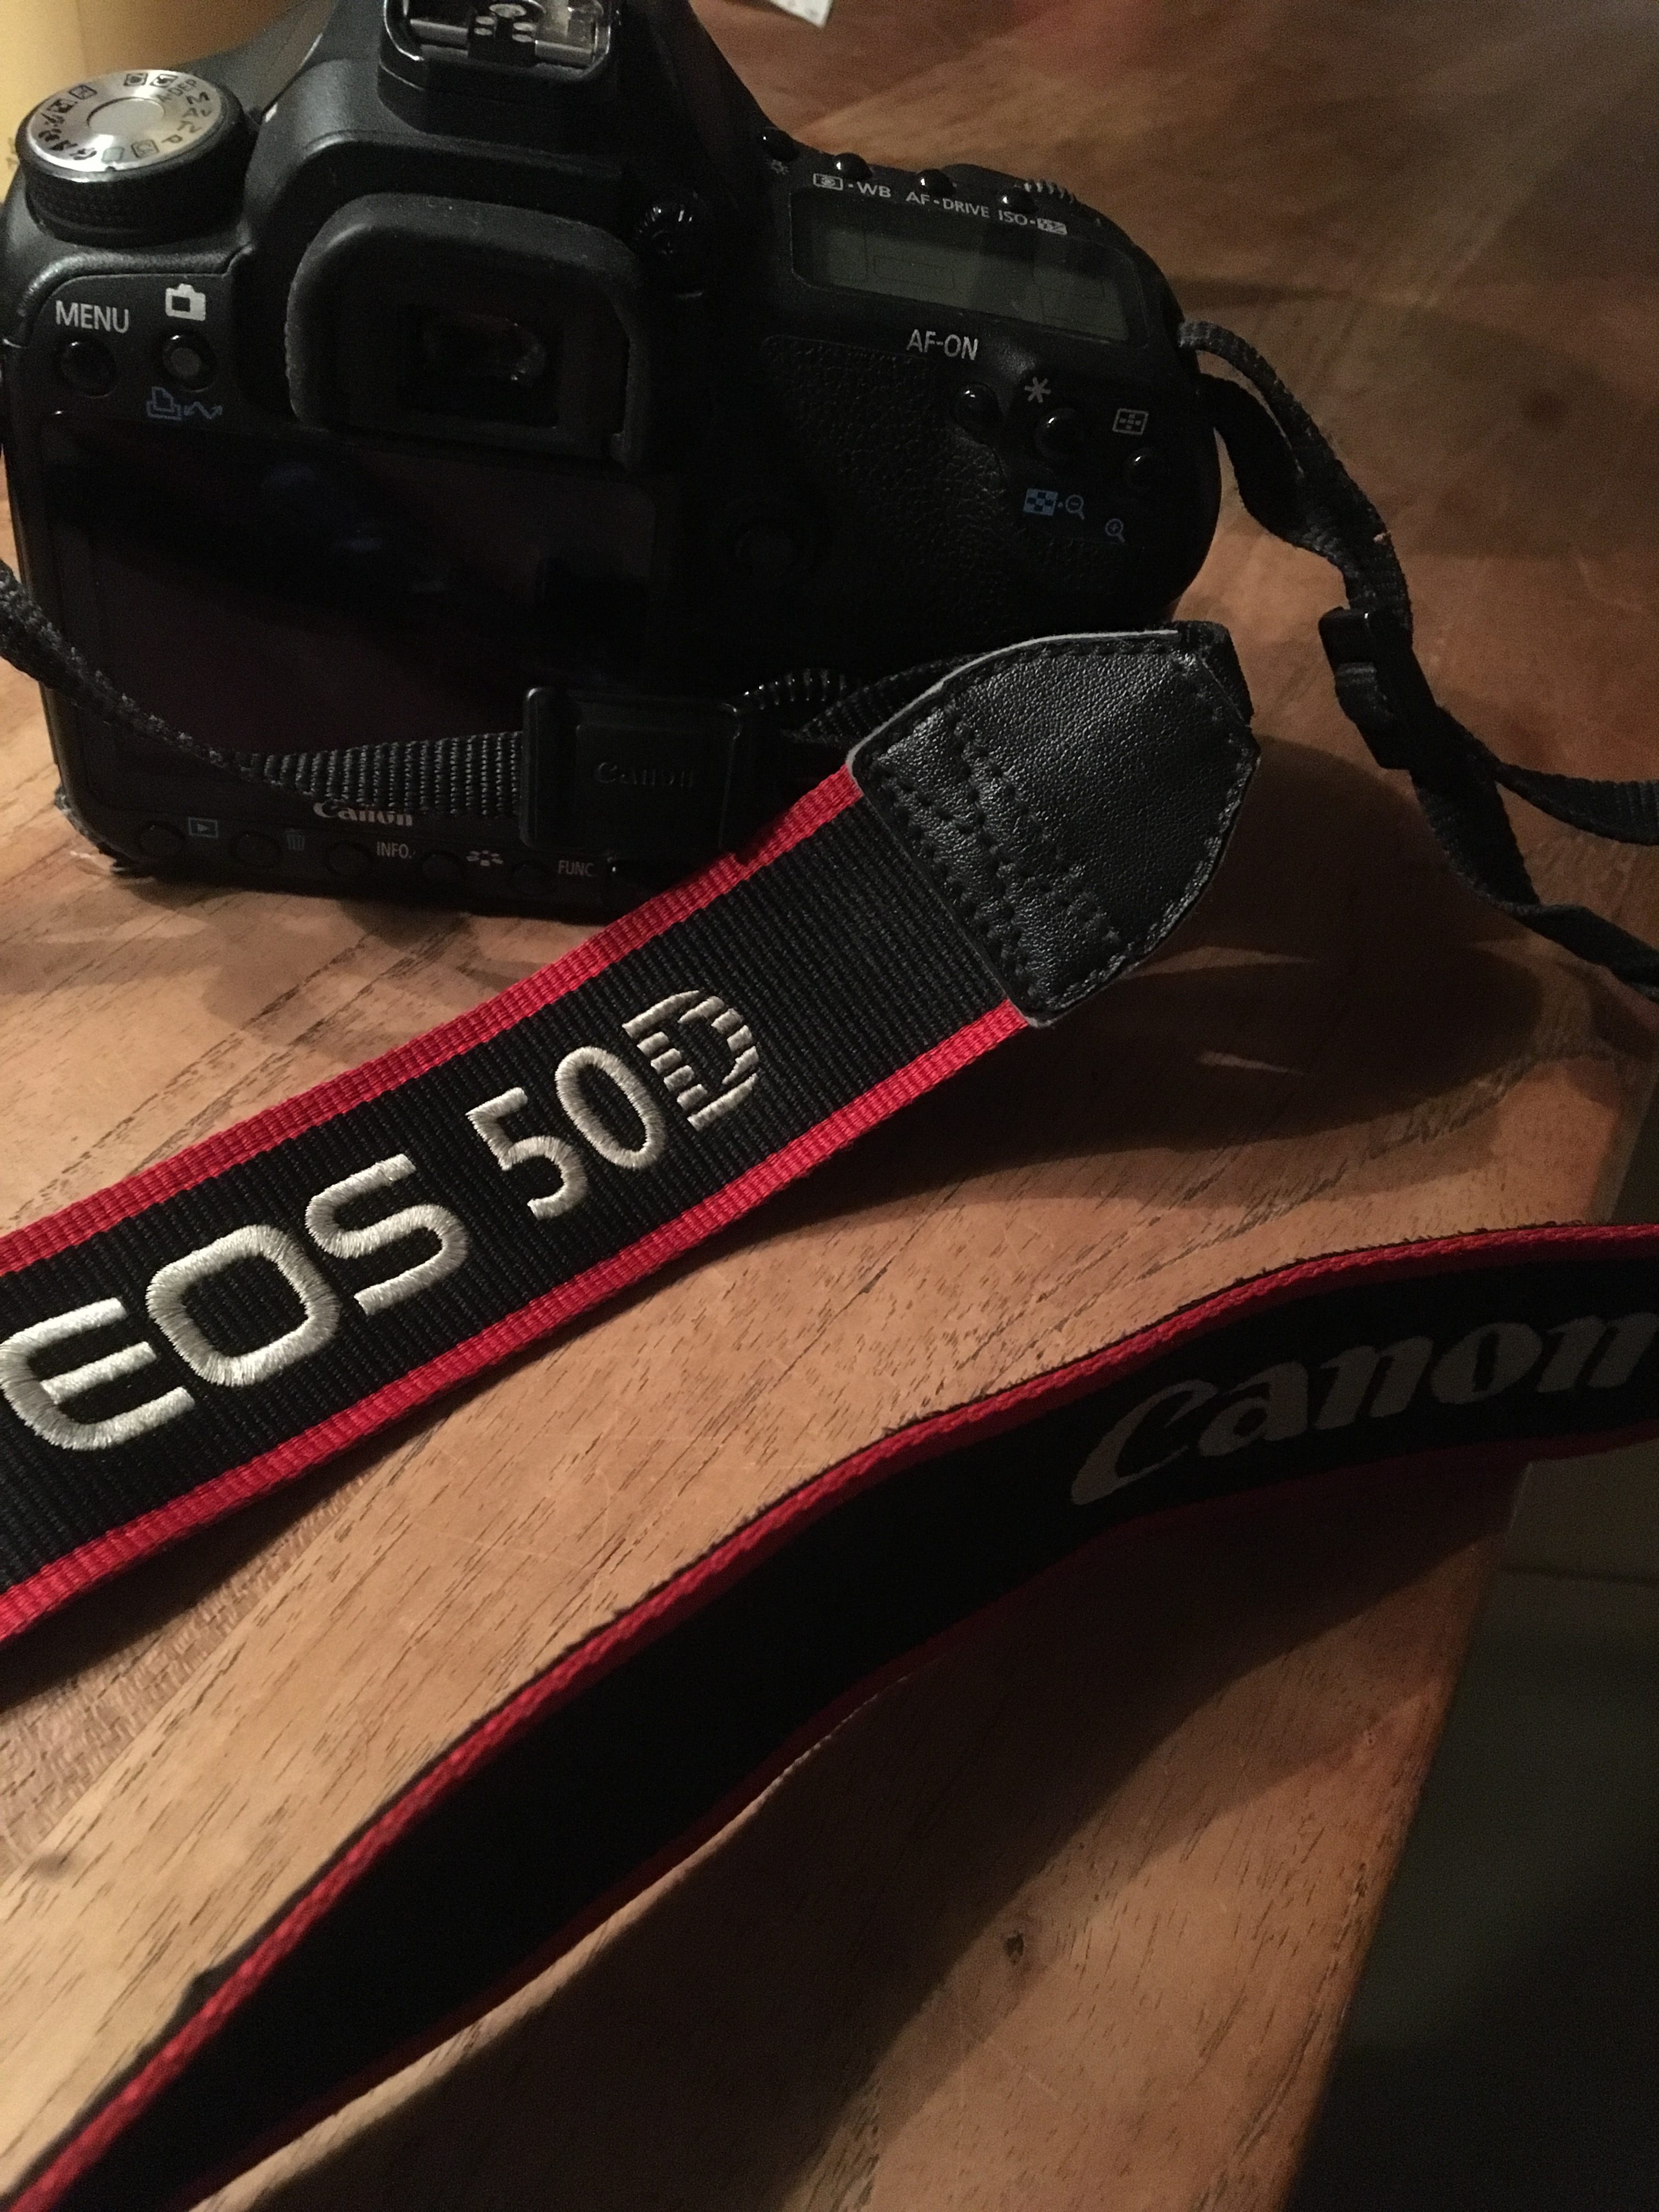 Canon EOS 50 D